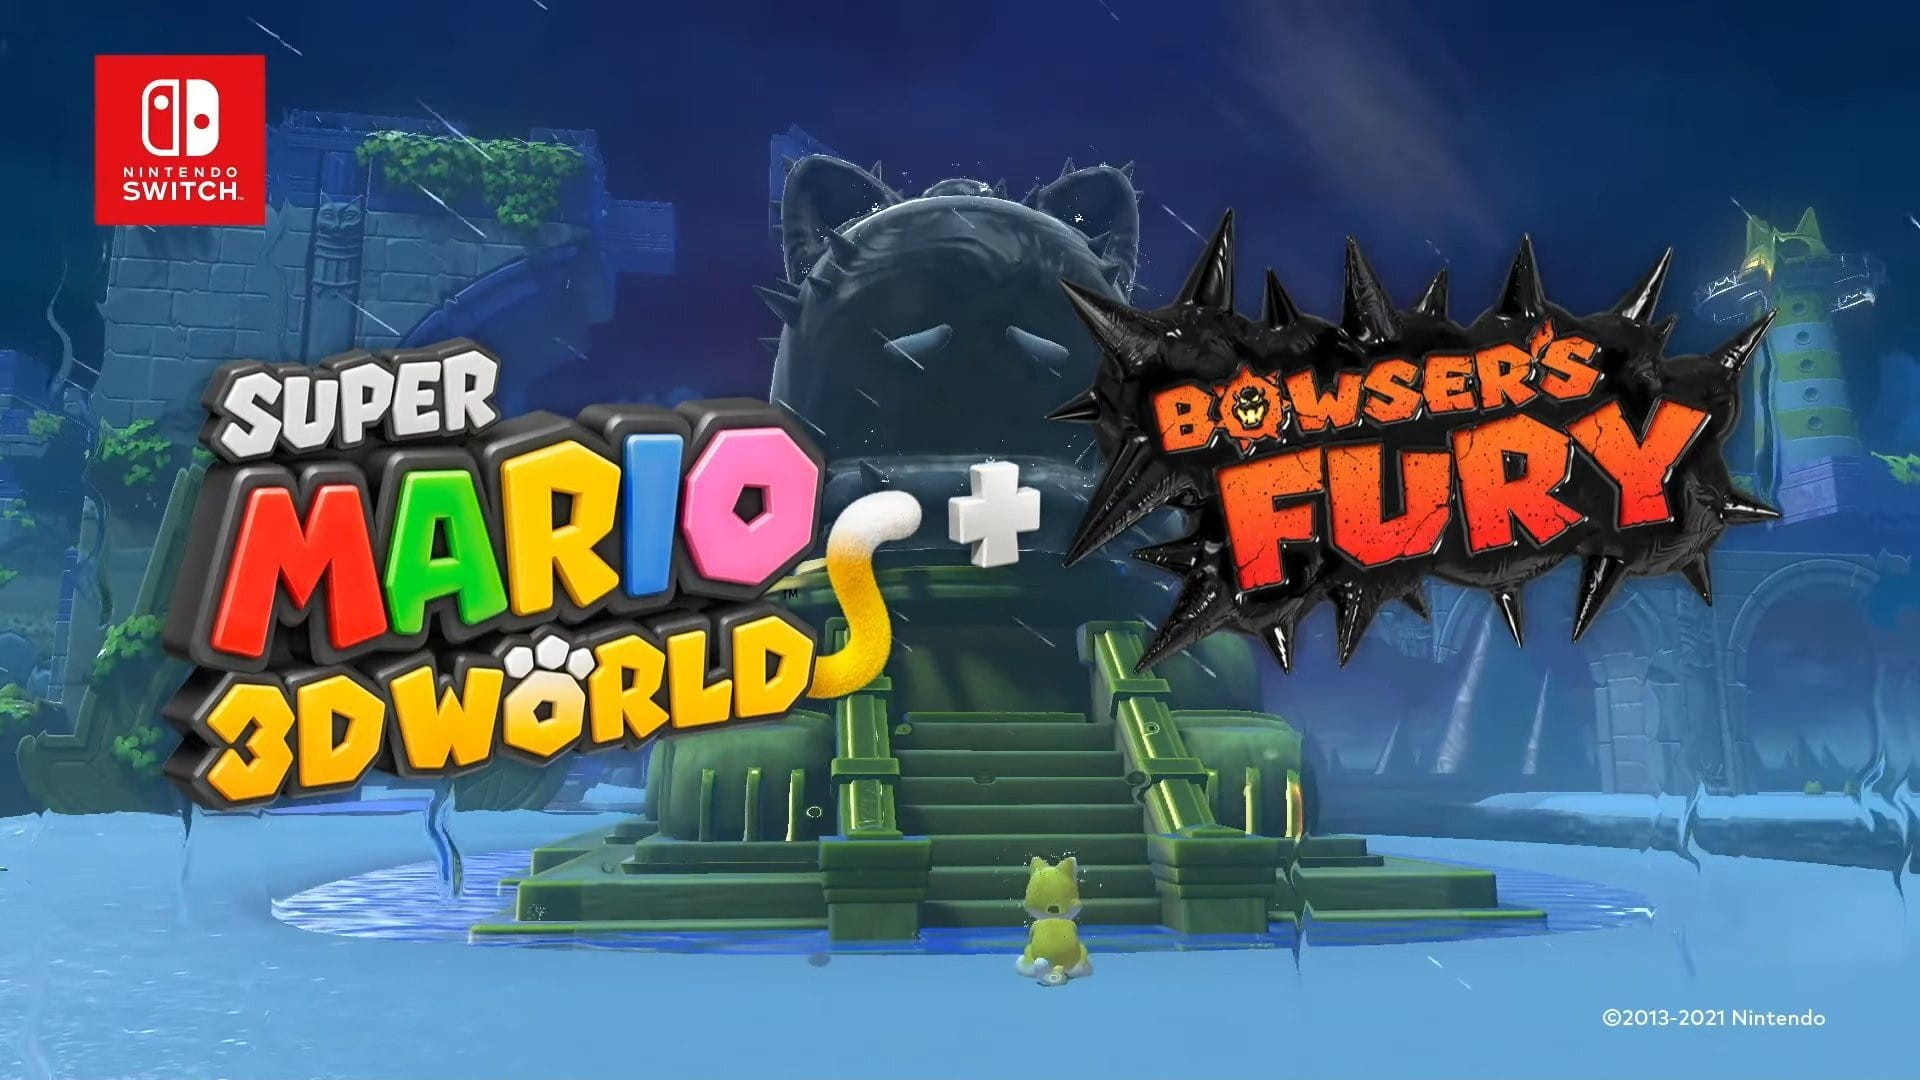 Super mario 3d world bowsers. Super Mario 3 d World Bowser s Fury. Super Mario 3d World + Bowser's Fury. Super Mario 3d World + Bowser’s Fury(2021). Super Mario 3d World Bowser's Fury Nintendo Switch.